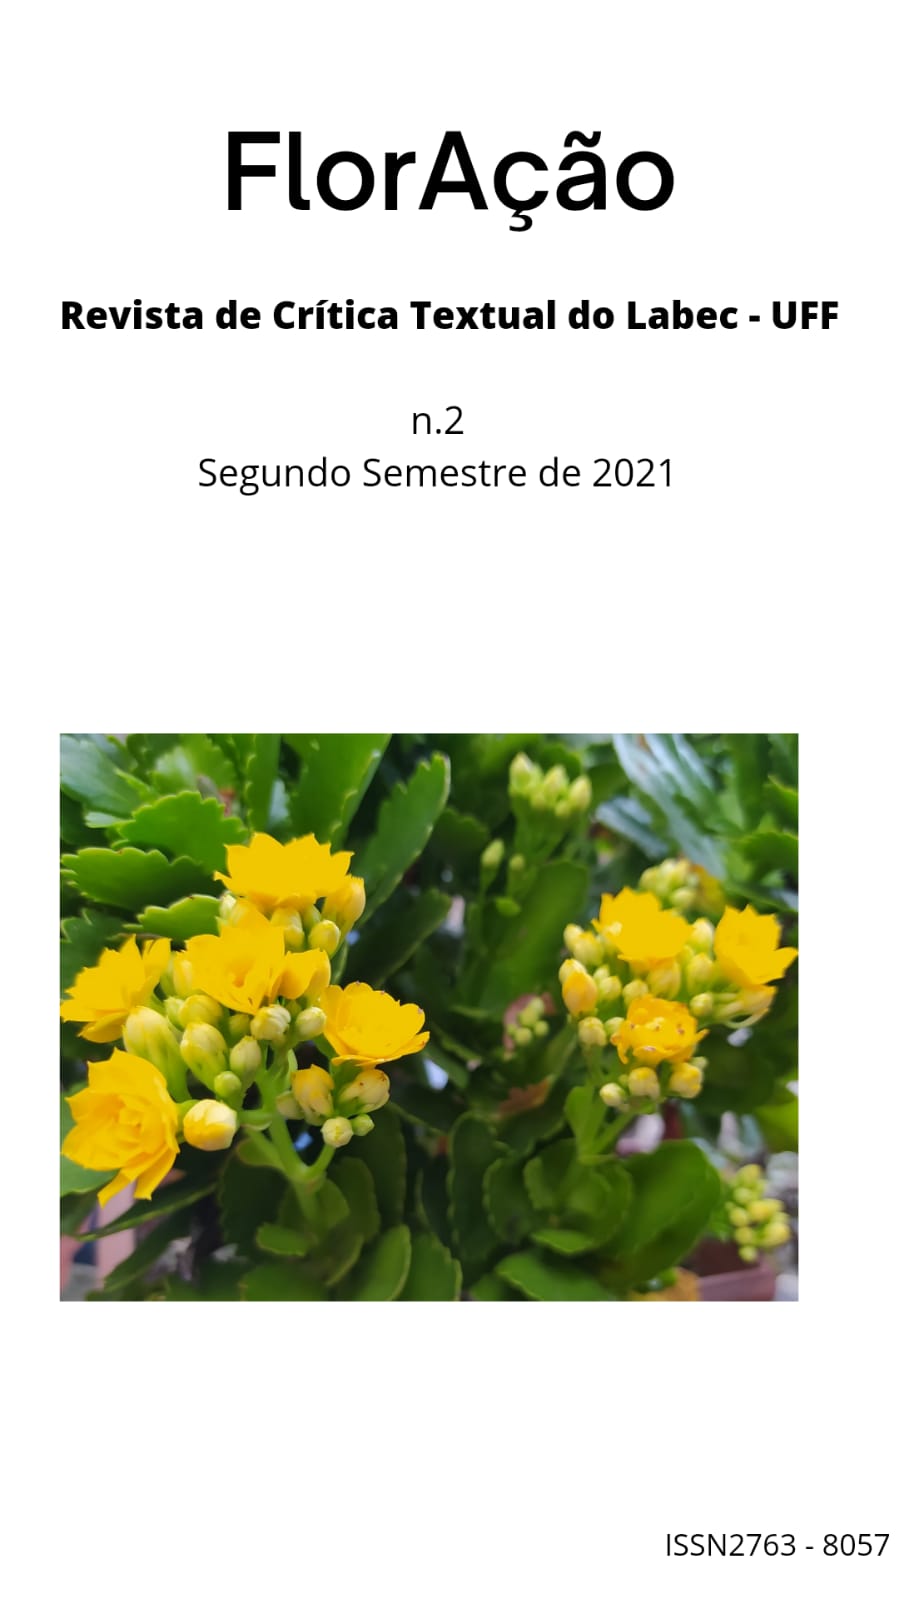 Título da Revista, seguido de seu subtítulo, informação sobre número e semestre. Mais abaixo, está a imagem de flores amarelas e, na margem inferior direita, o ISSN